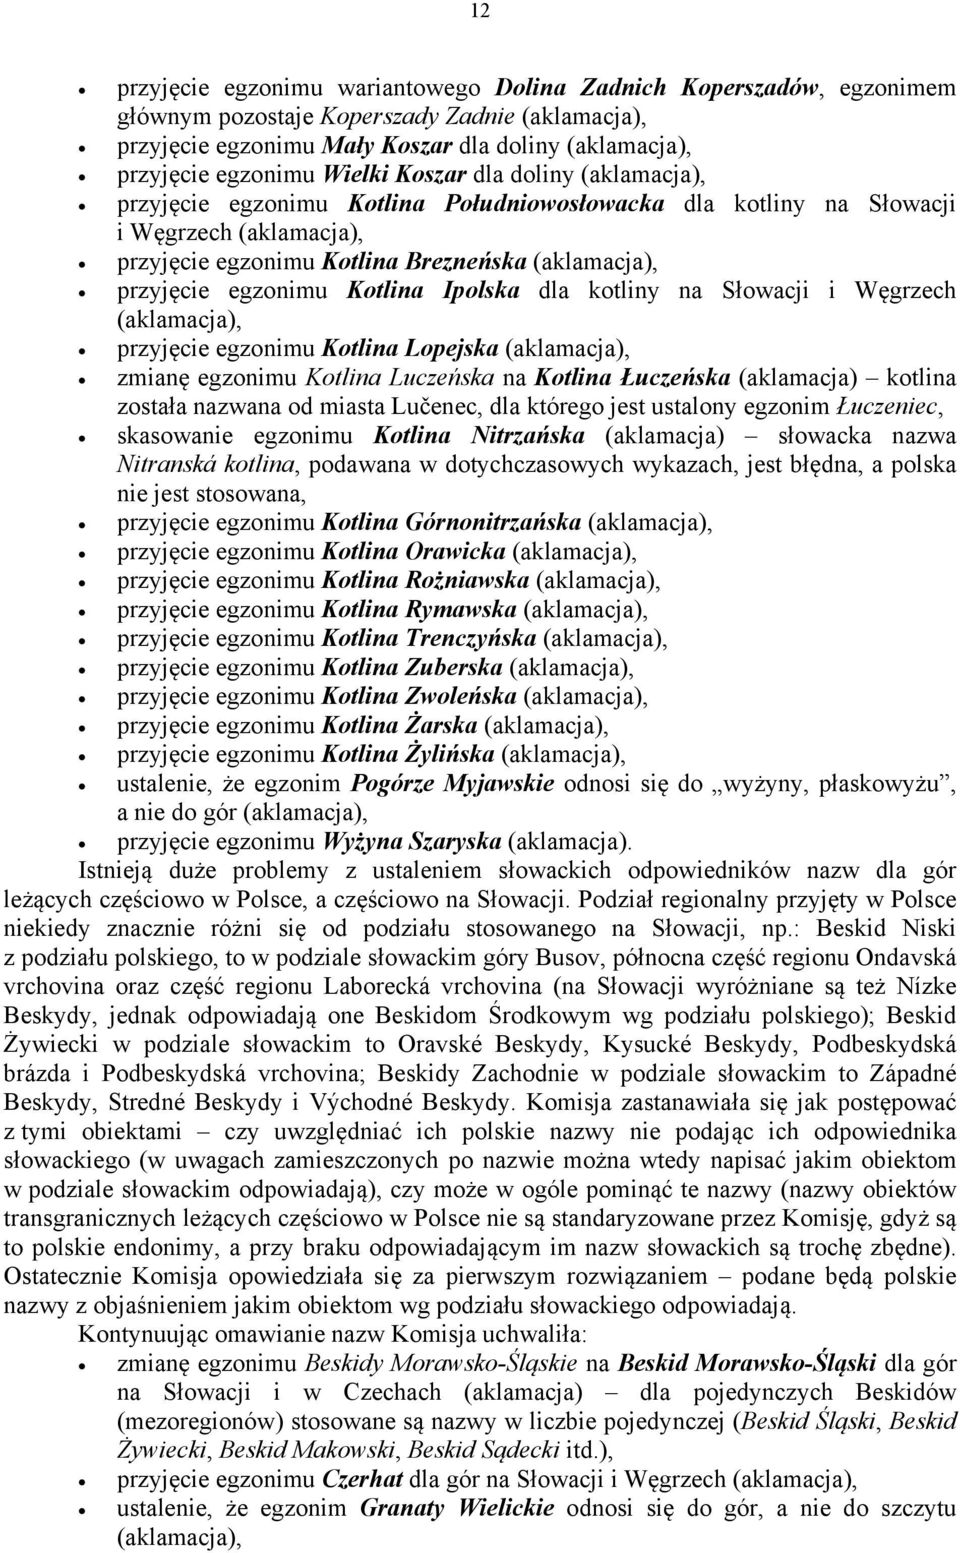 egzonimu Kotlina Lopejska zmianę egzonimu Kotlina Luczeńska na Kotlina Łuczeńska (aklamacja) kotlina została nazwana od miasta Lučenec, dla którego jest ustalony egzonim Łuczeniec, skasowanie